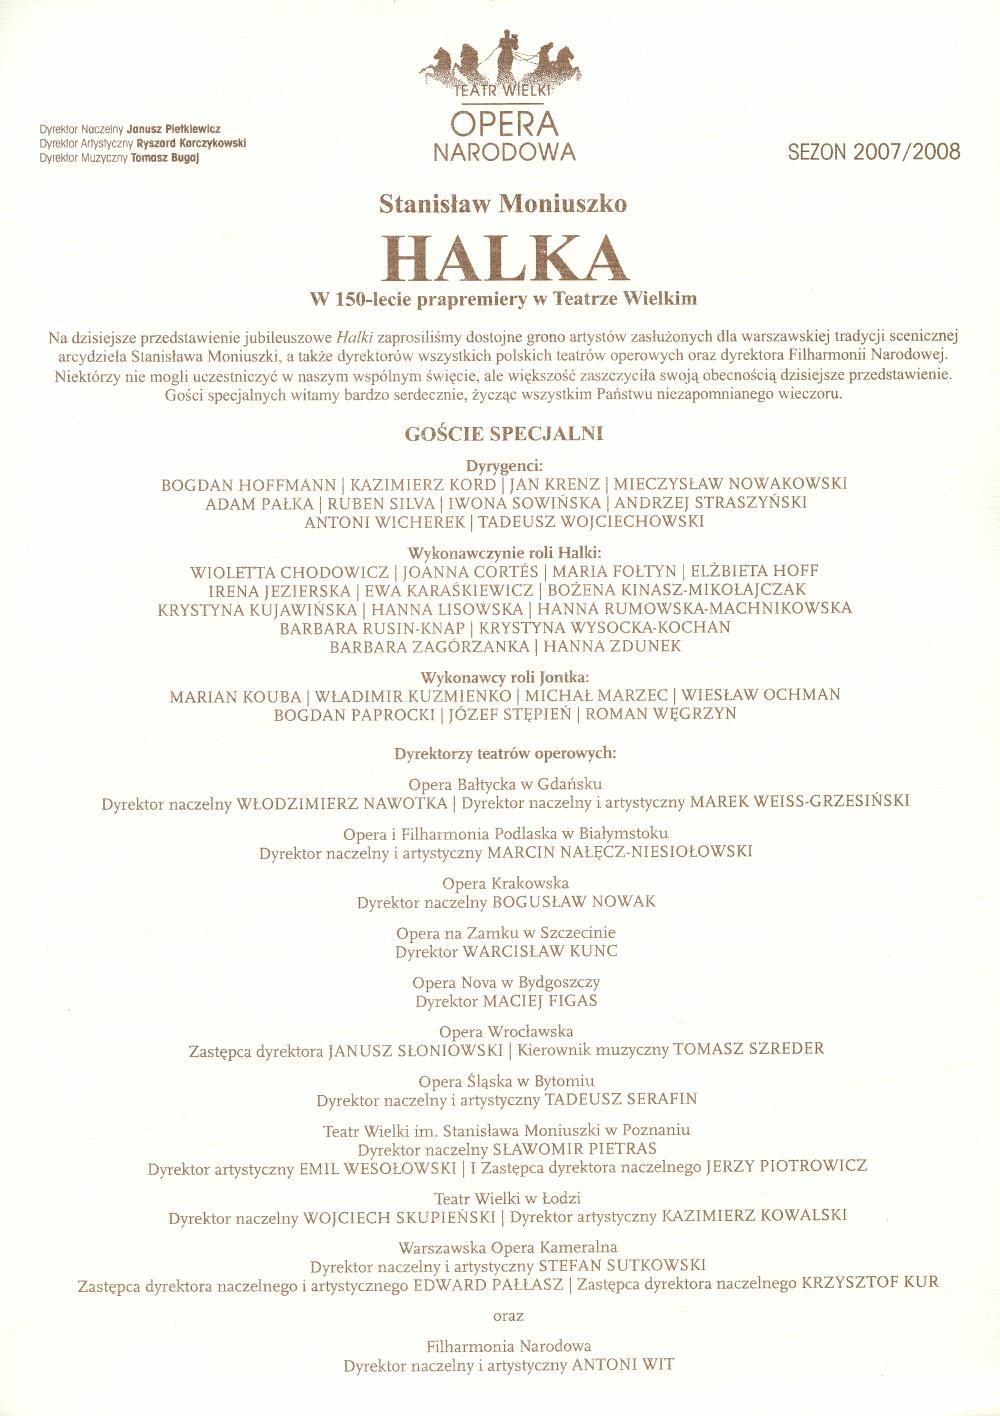 Wkładka okolicznościowa z okazji 150-lecia prapremiery „Halki” Stanisława Moniuszki w Teatrze Wielkim 04-01-2008